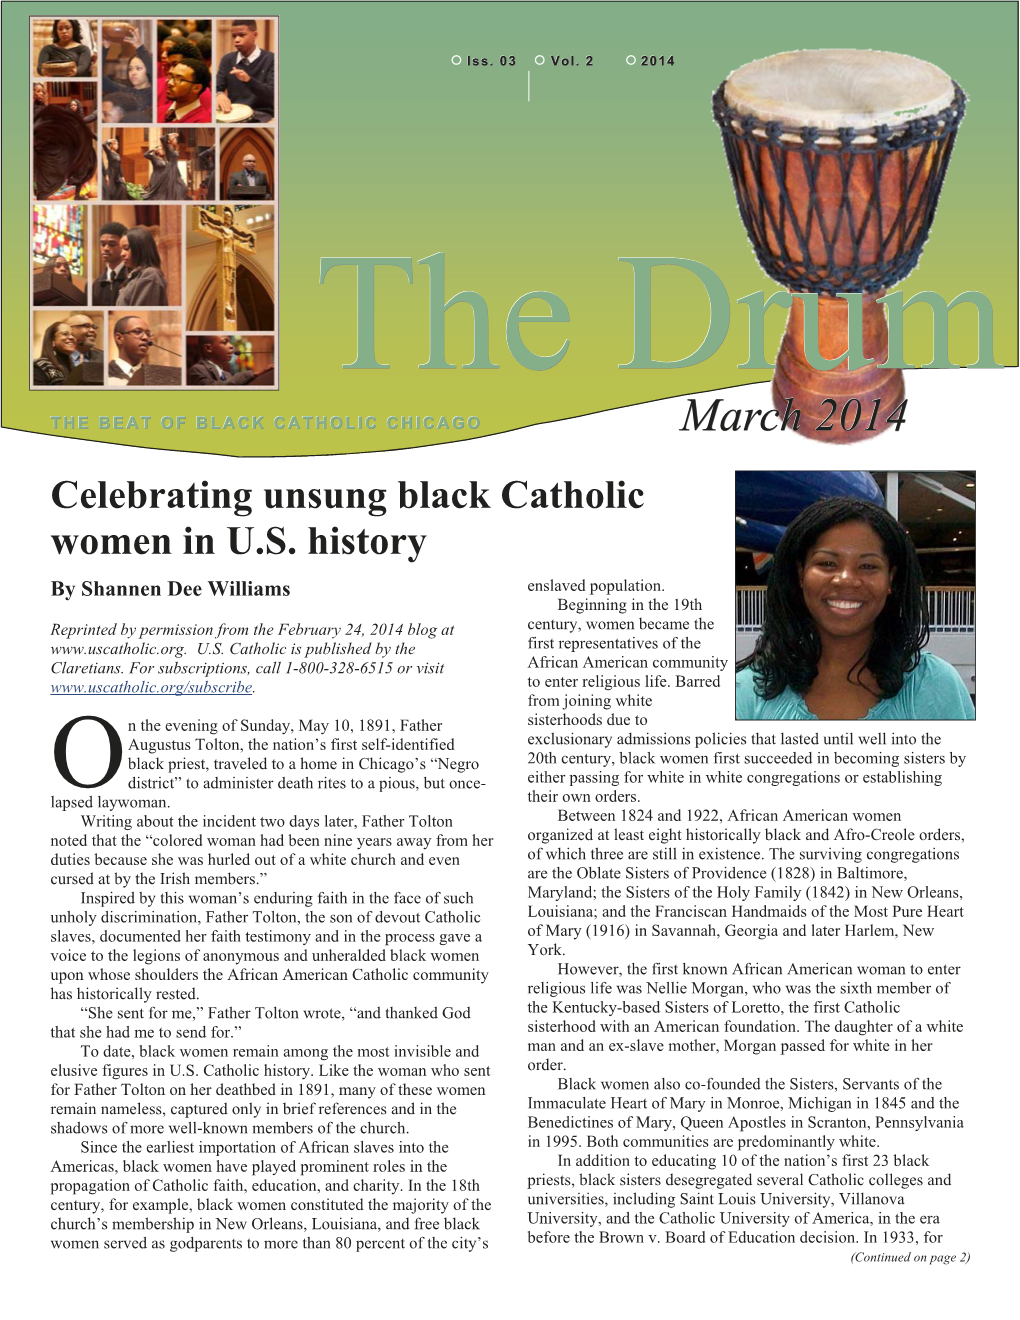 March 2014 Celebrating Unsung Black Catholic Women in U.S